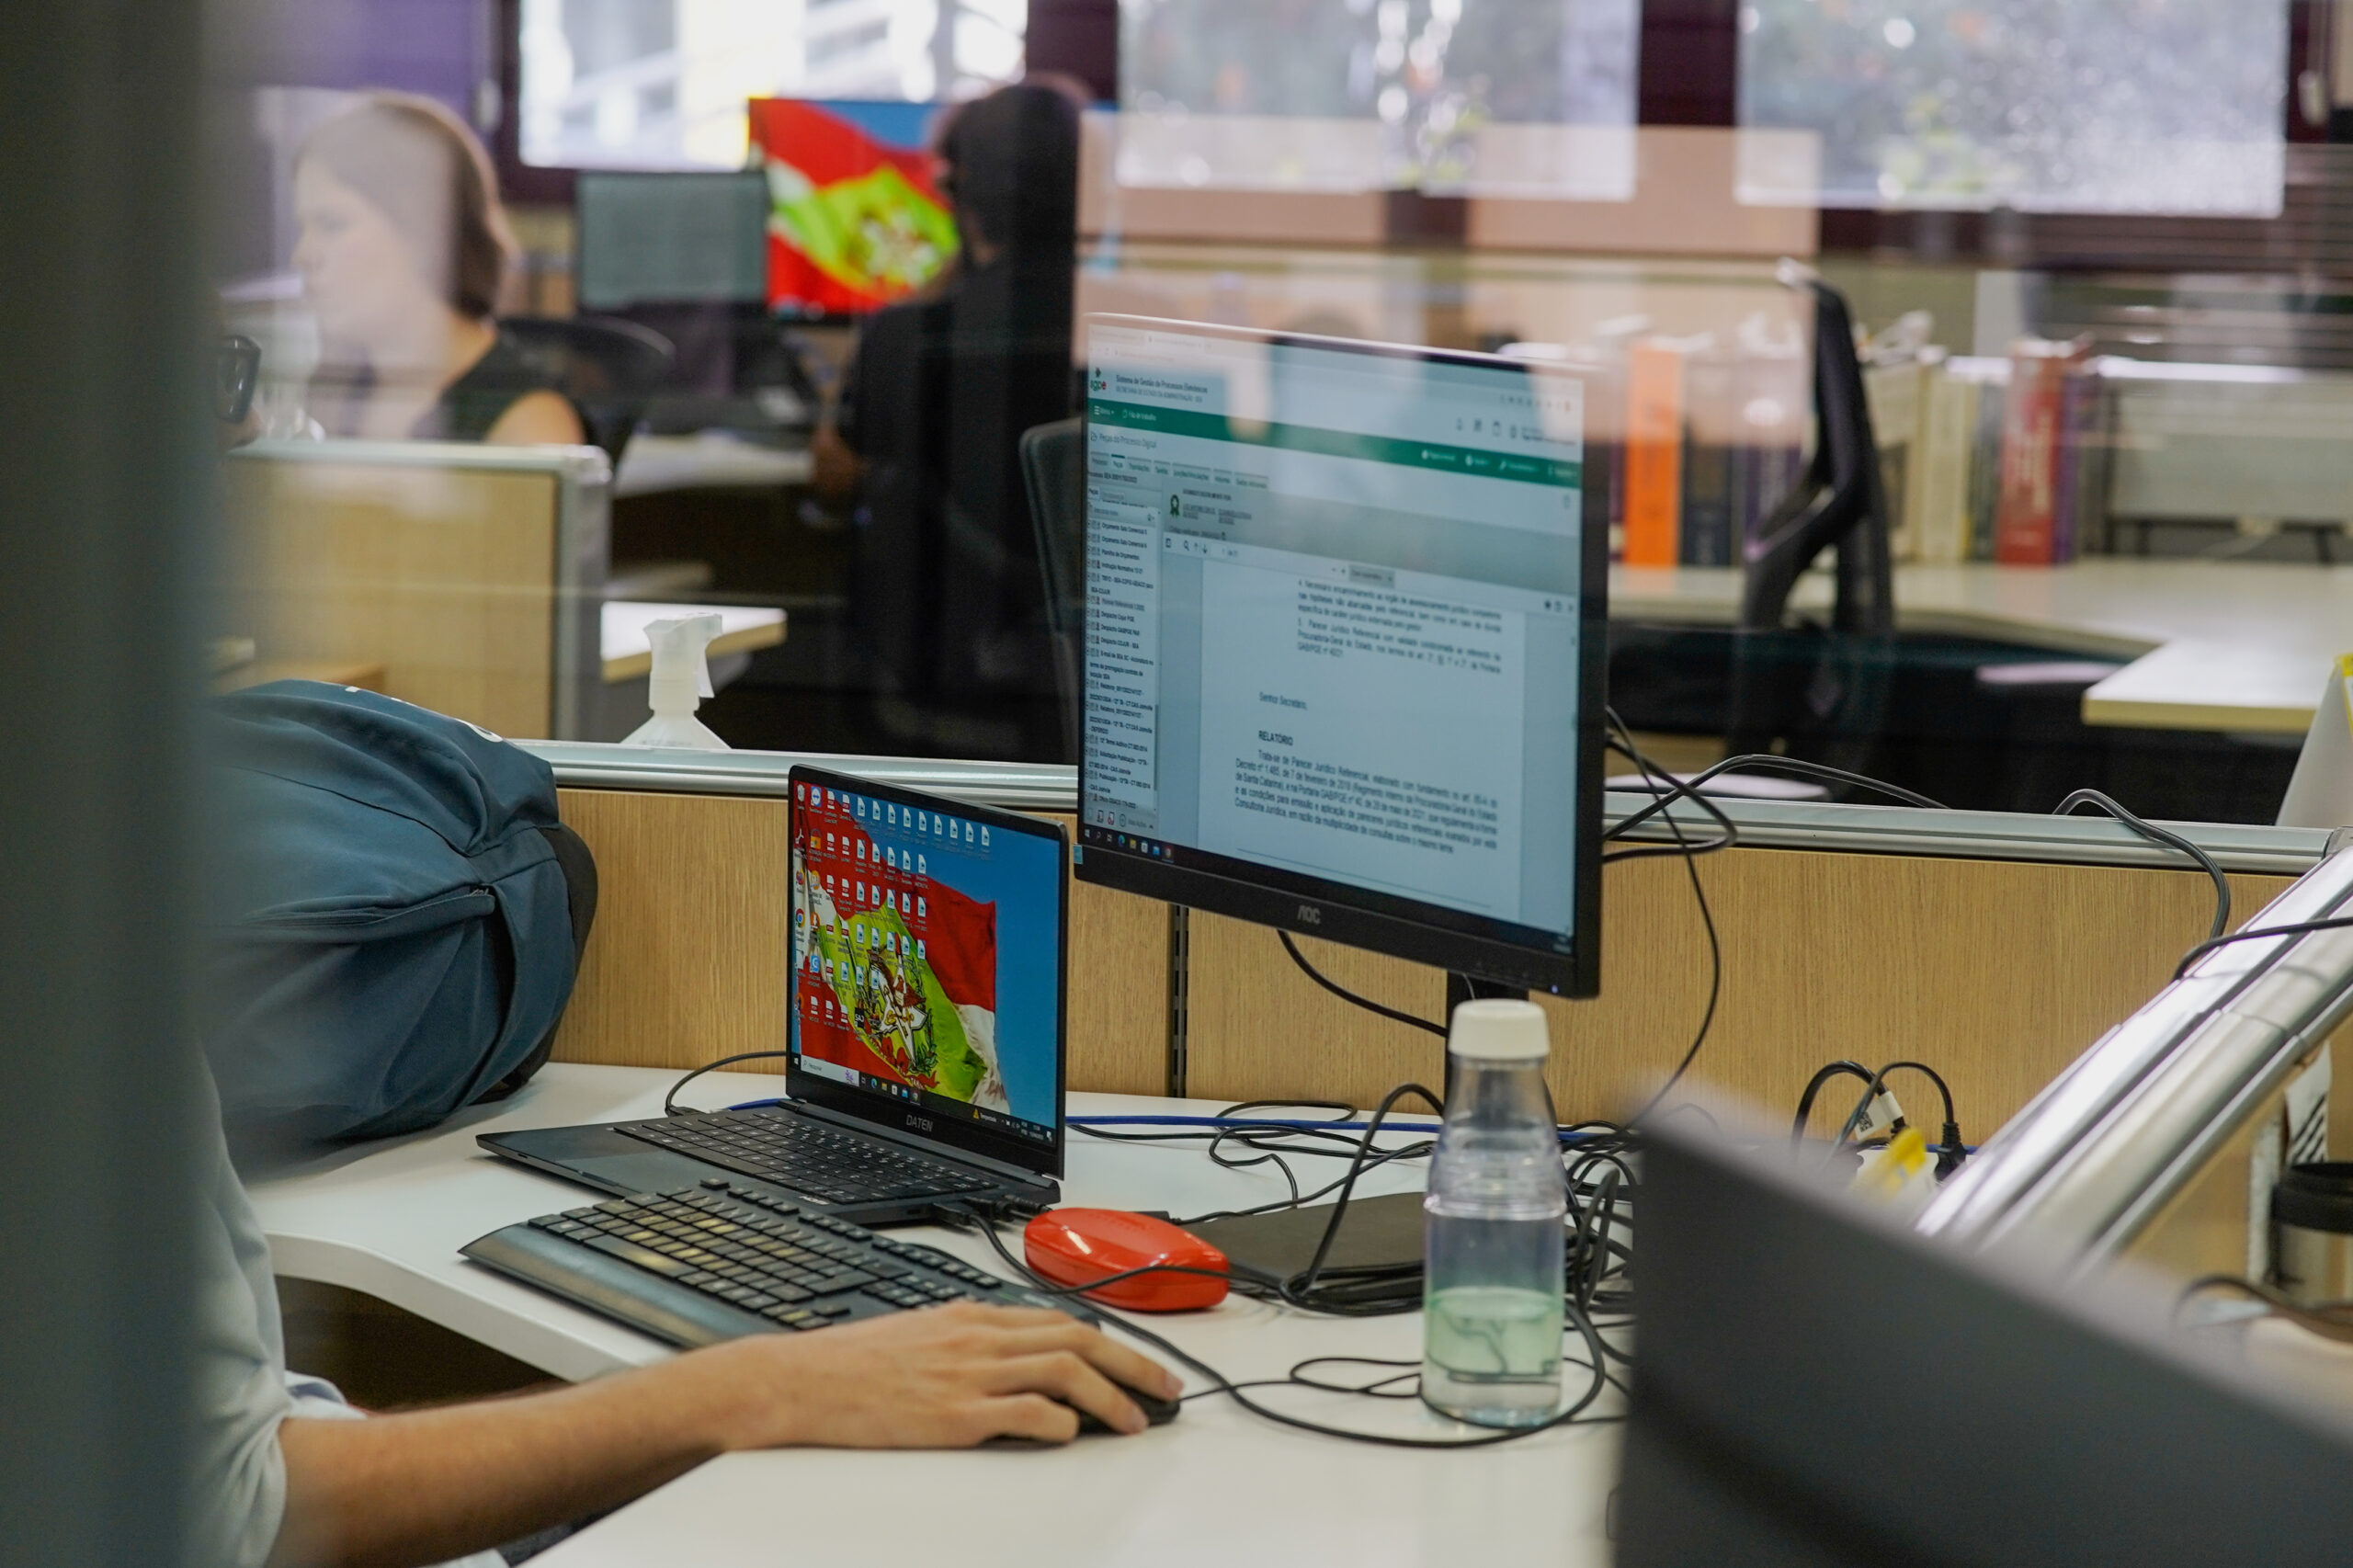 Servidor trabalhando no computador e monitor de computador com fundo da bandeira do Estado.